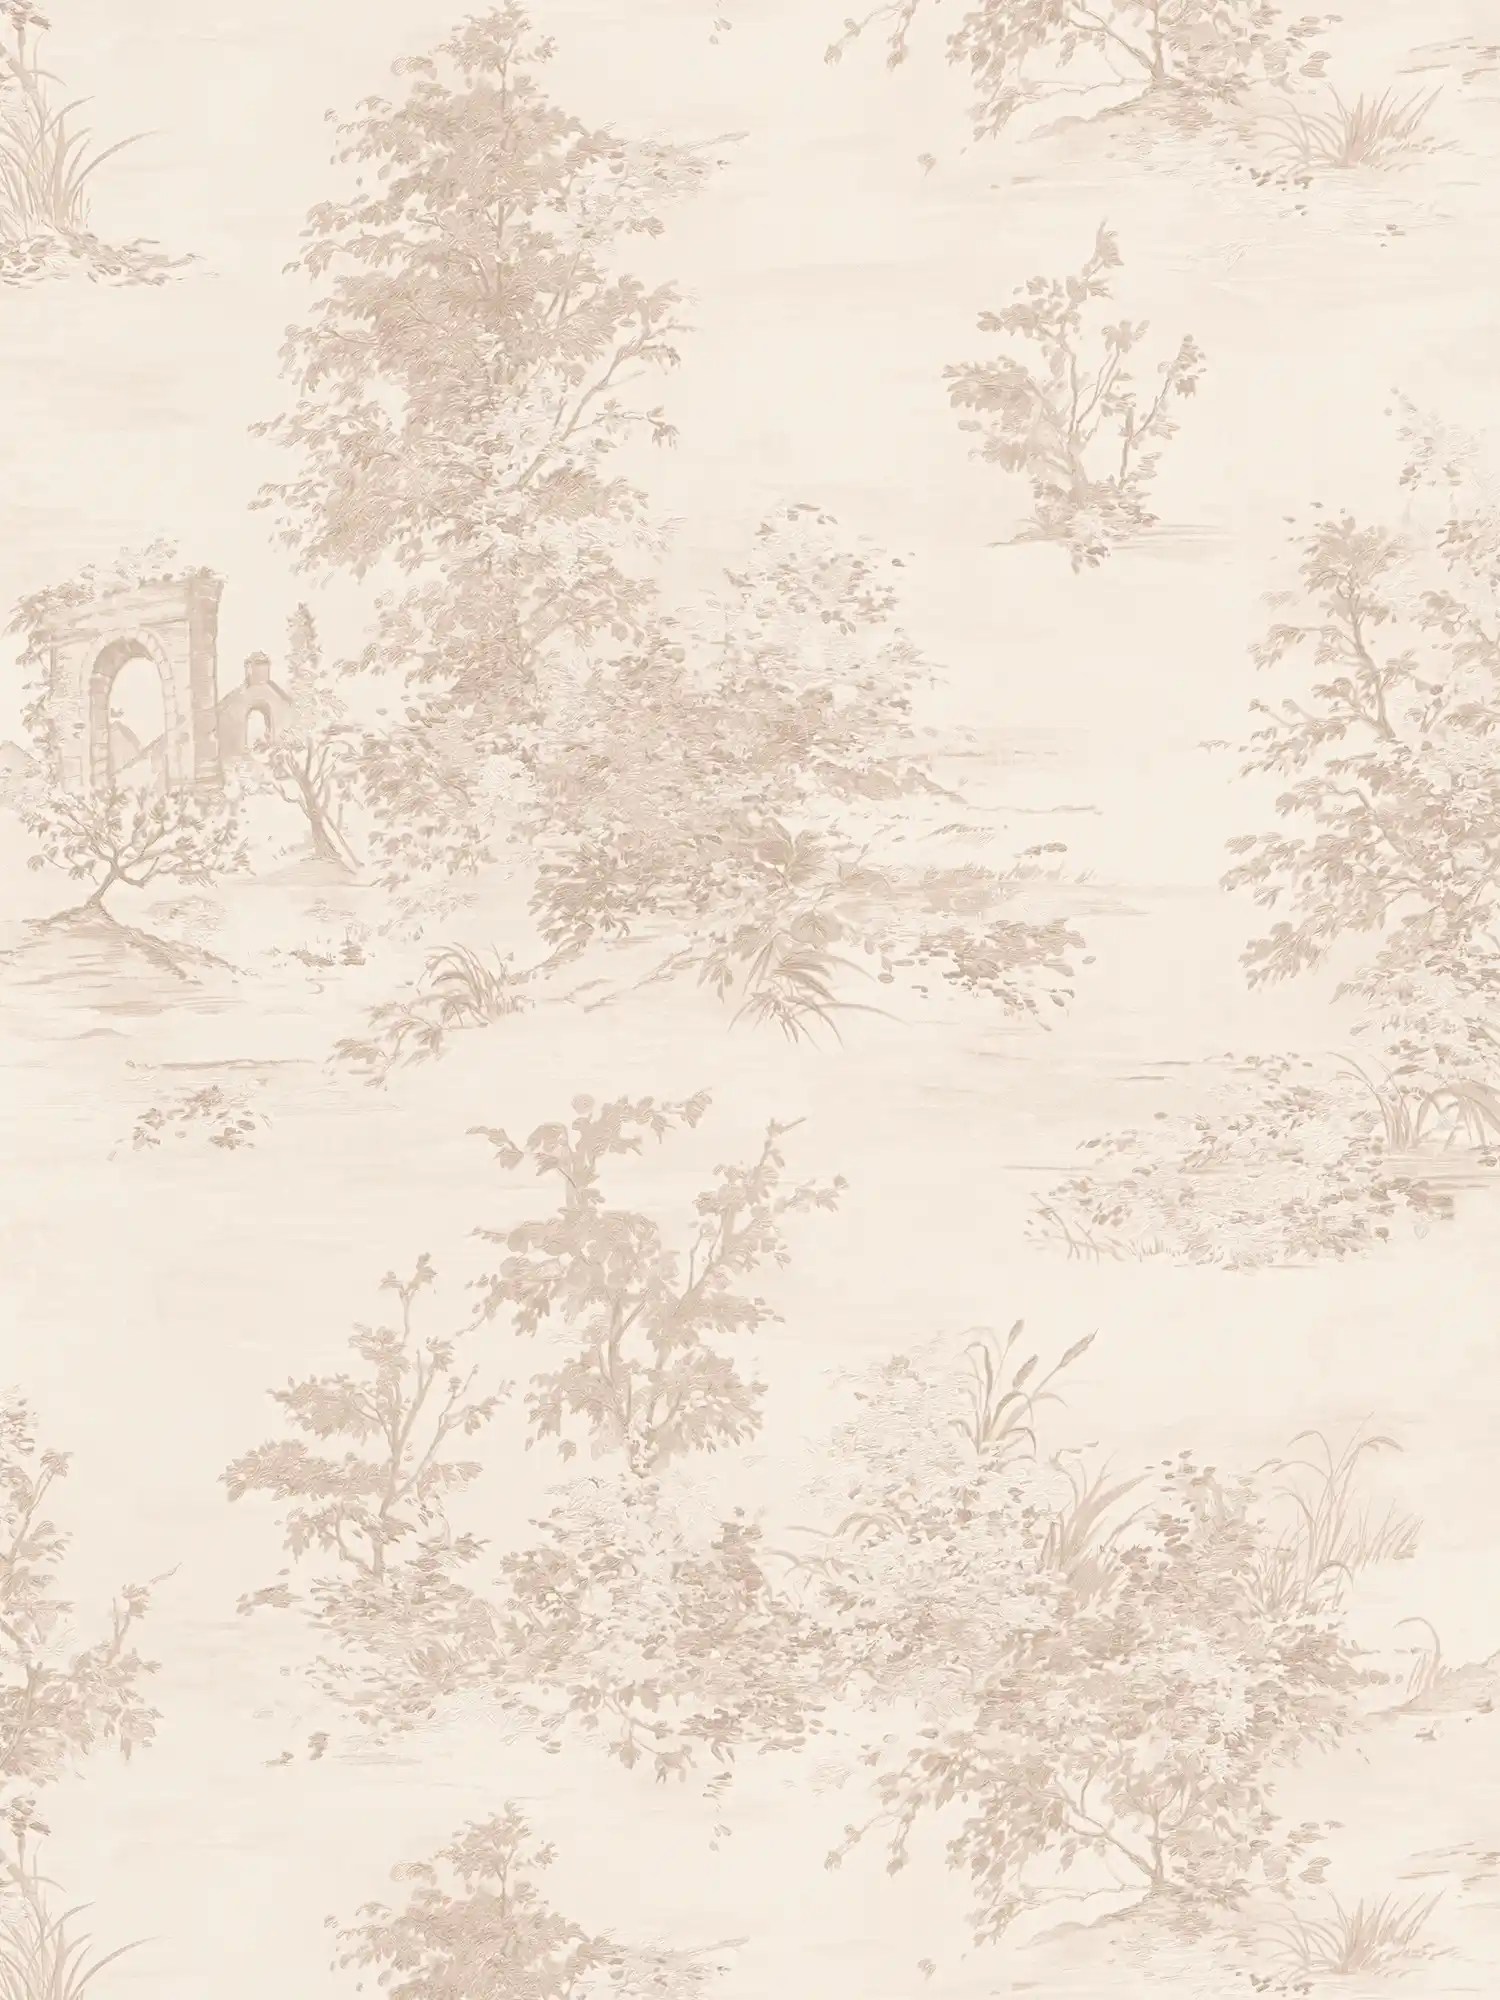 Landhuisbehang in historische stijl met landschapsmotief - beige, crème, roze
